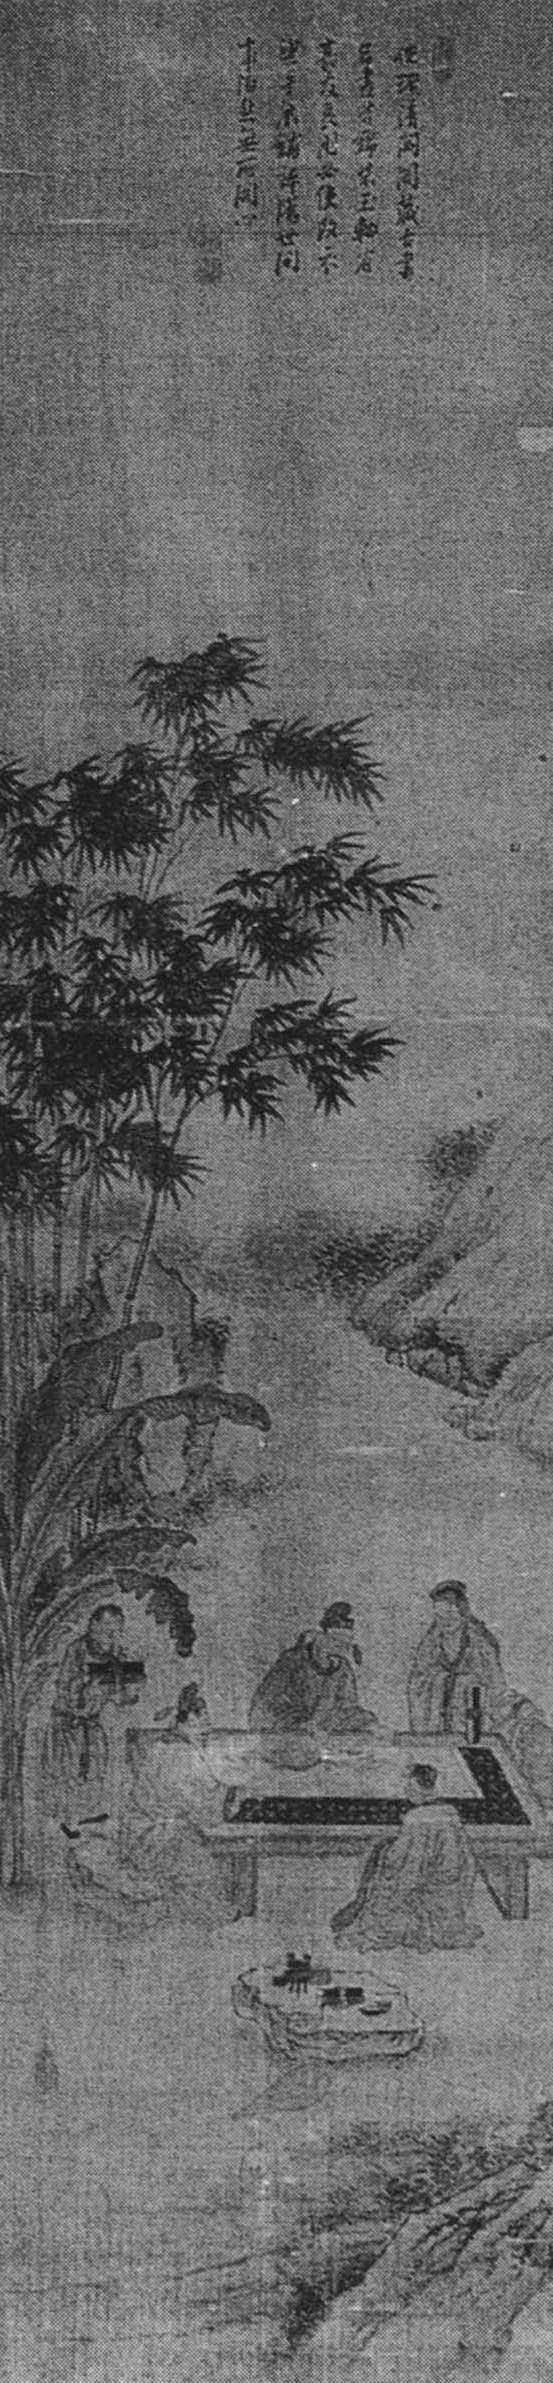 중국고사도(中國故事圖)10첩병풍 썸네일